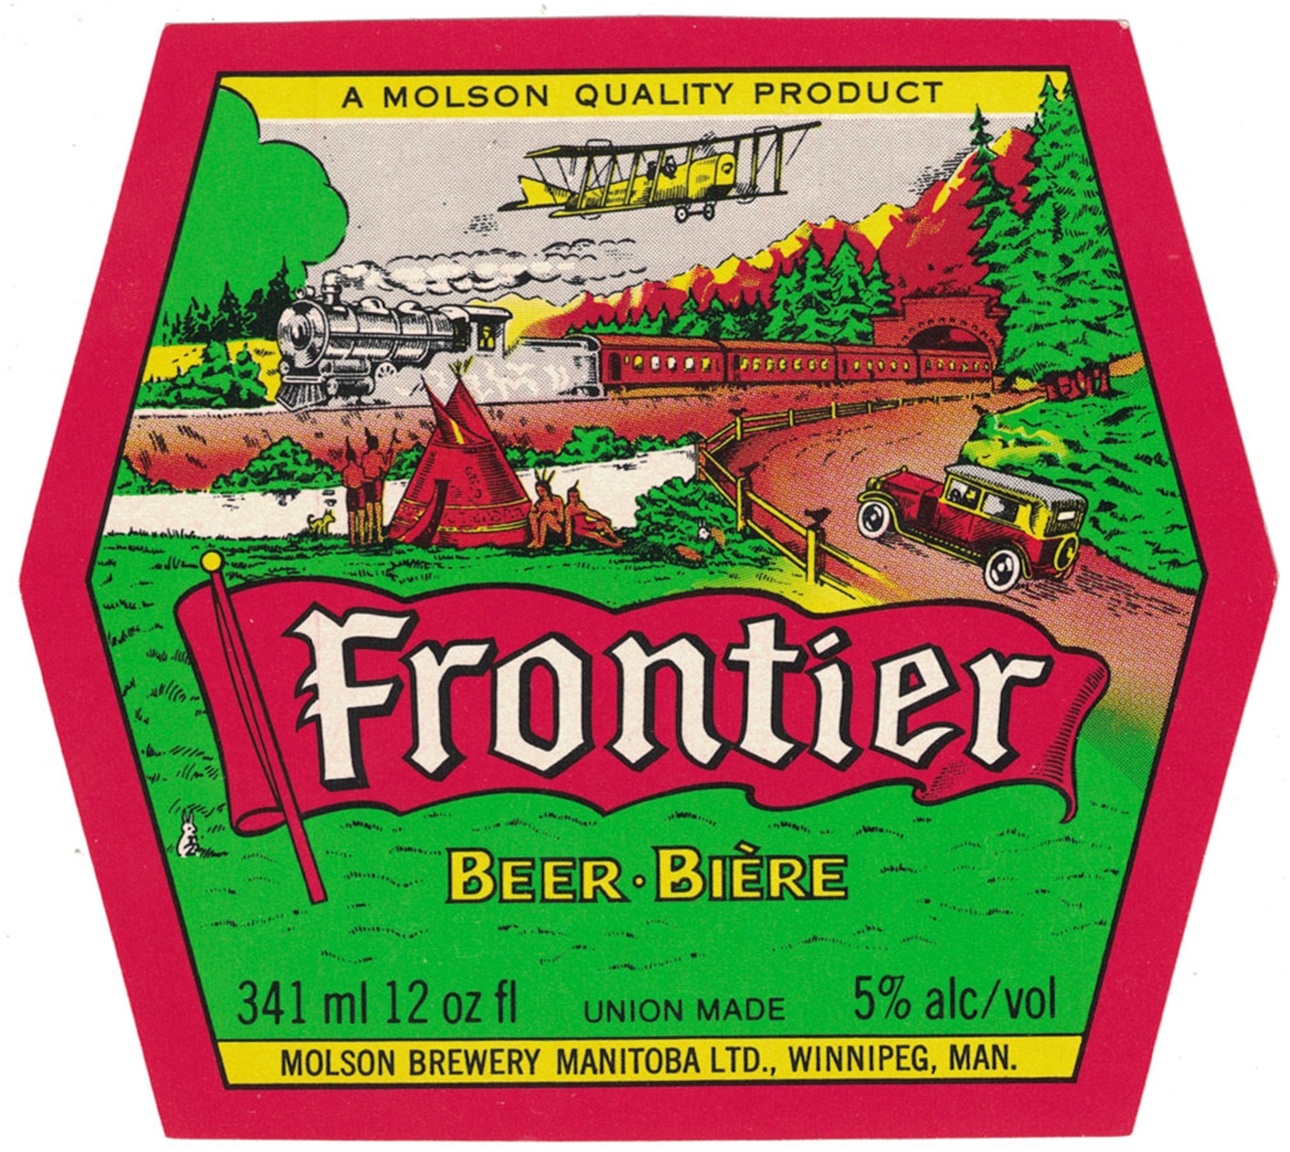 Frontier Beer Bière Label